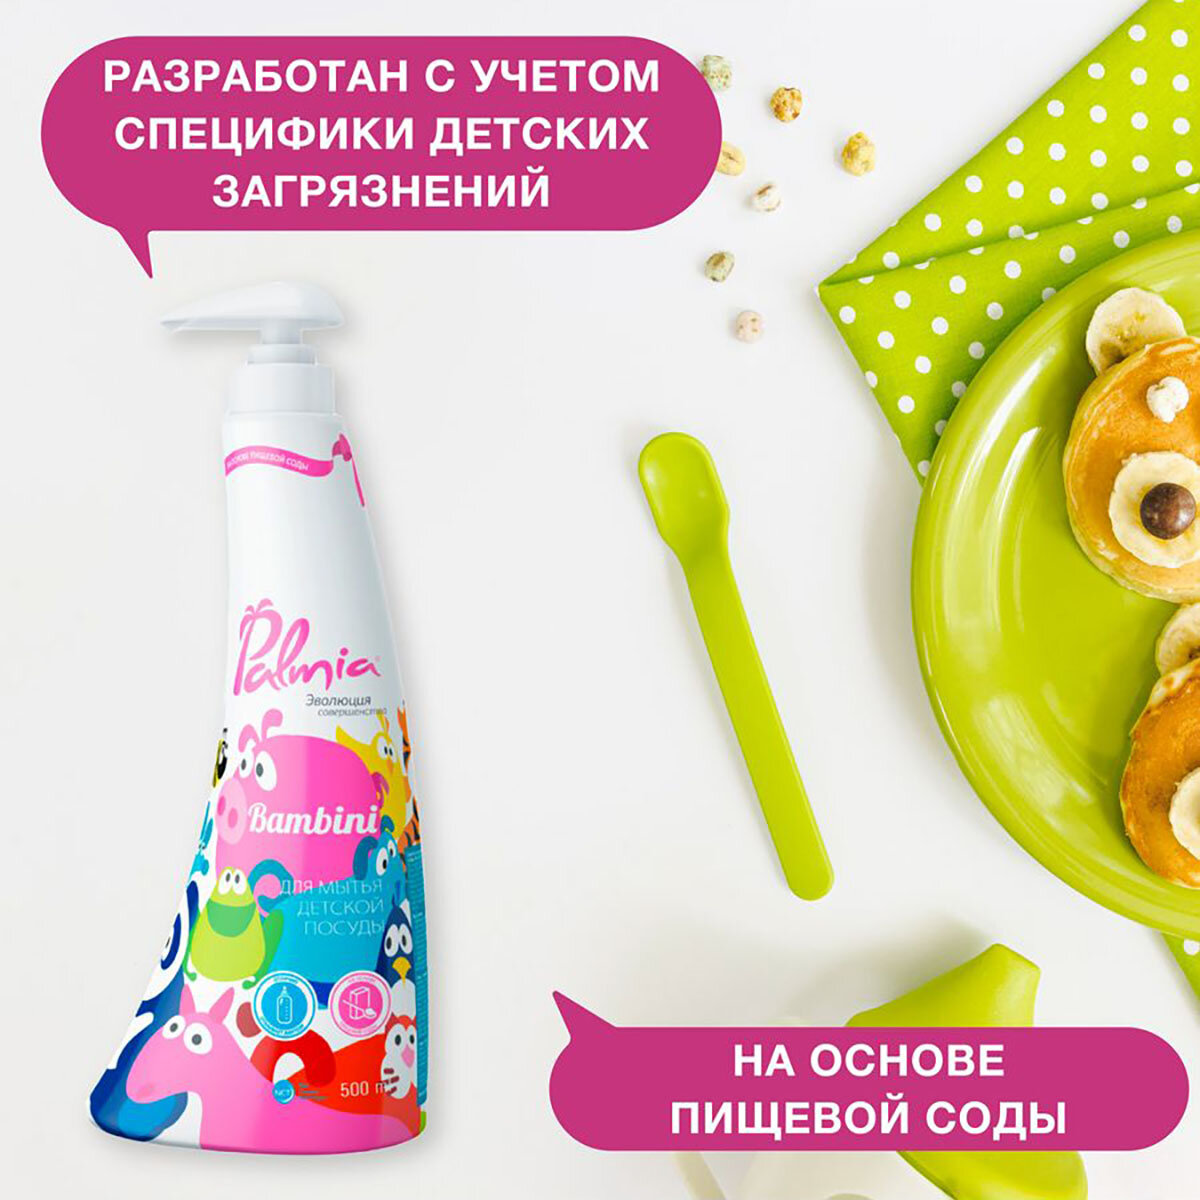 Средство Palmia Bambini д/мытья детской посуды 500 мл - фото №9